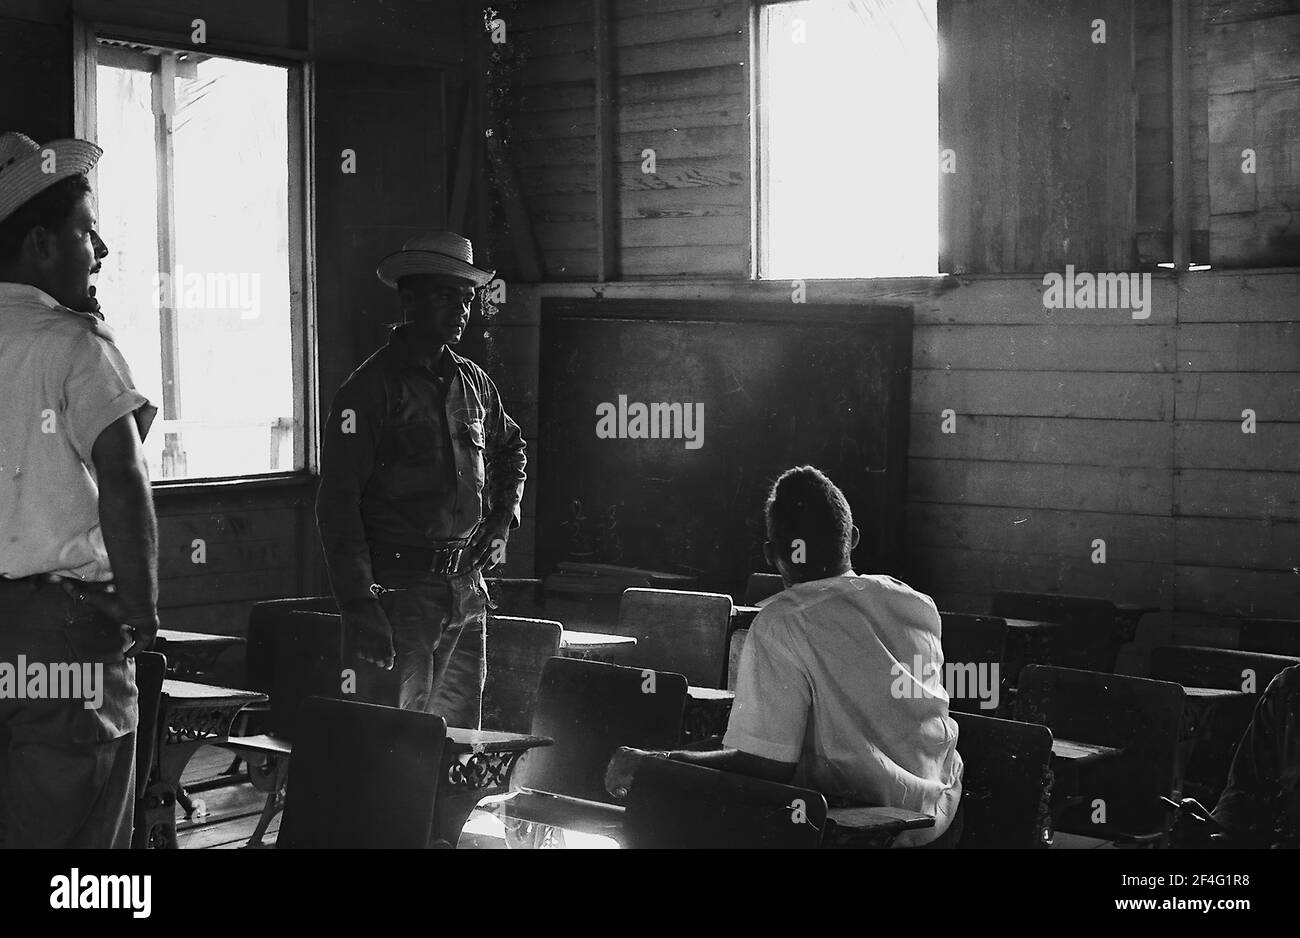 Les gens recherchent les bureaux de Fidel et Raul Castro à l'école de Biran, Cuba, province de Holguin, à l'intérieur d'une école, 1963. De la collection de photographies Deena Stryker. () Banque D'Images